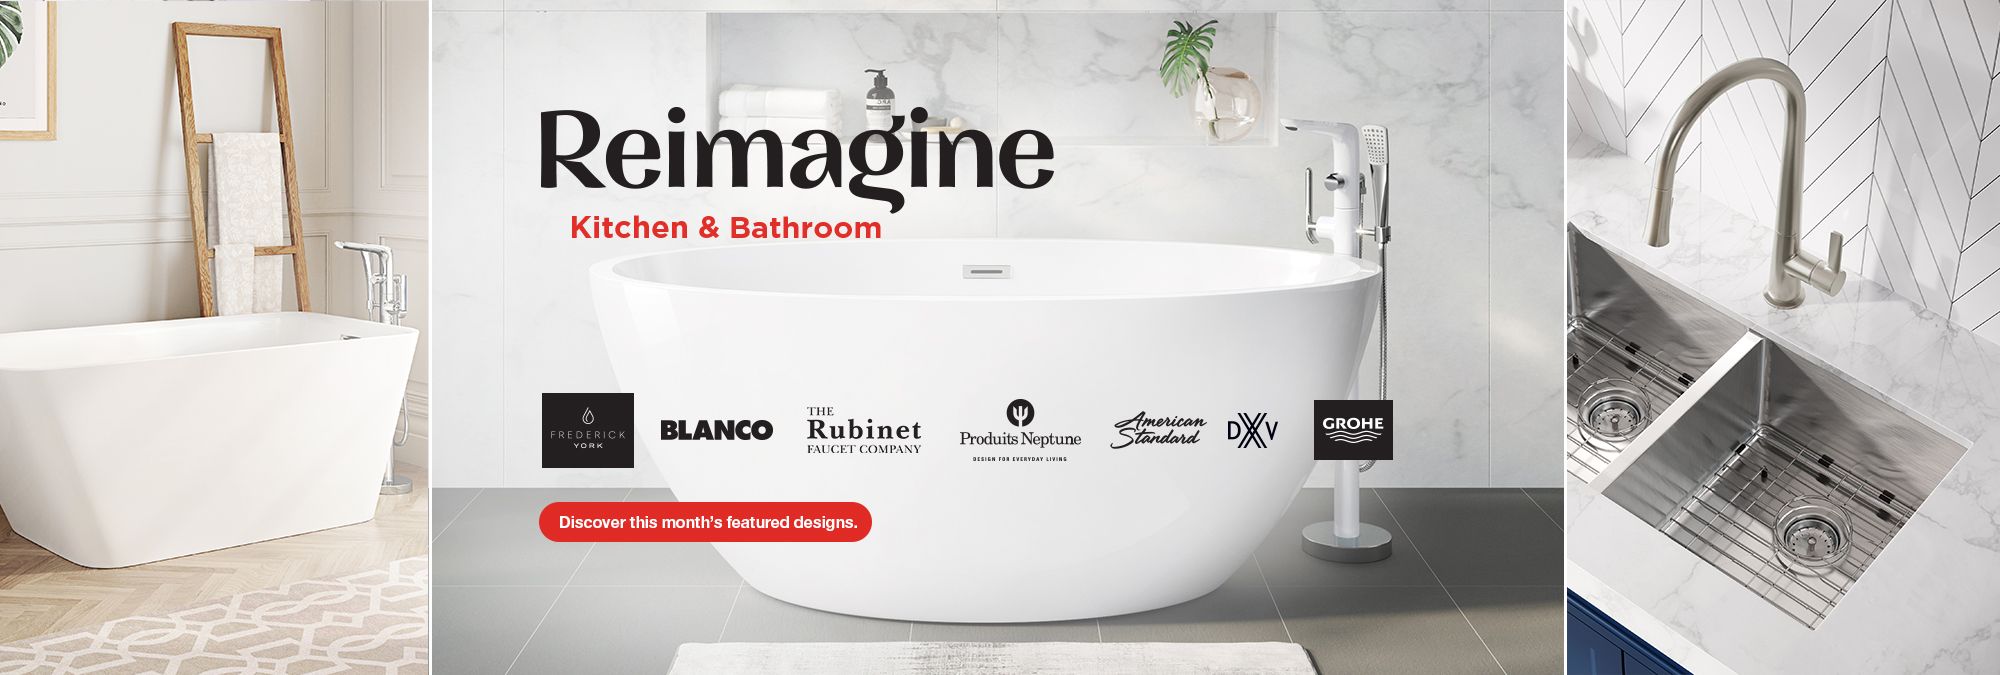 TAPS Reimagine Kitchen & Bathroom 2019